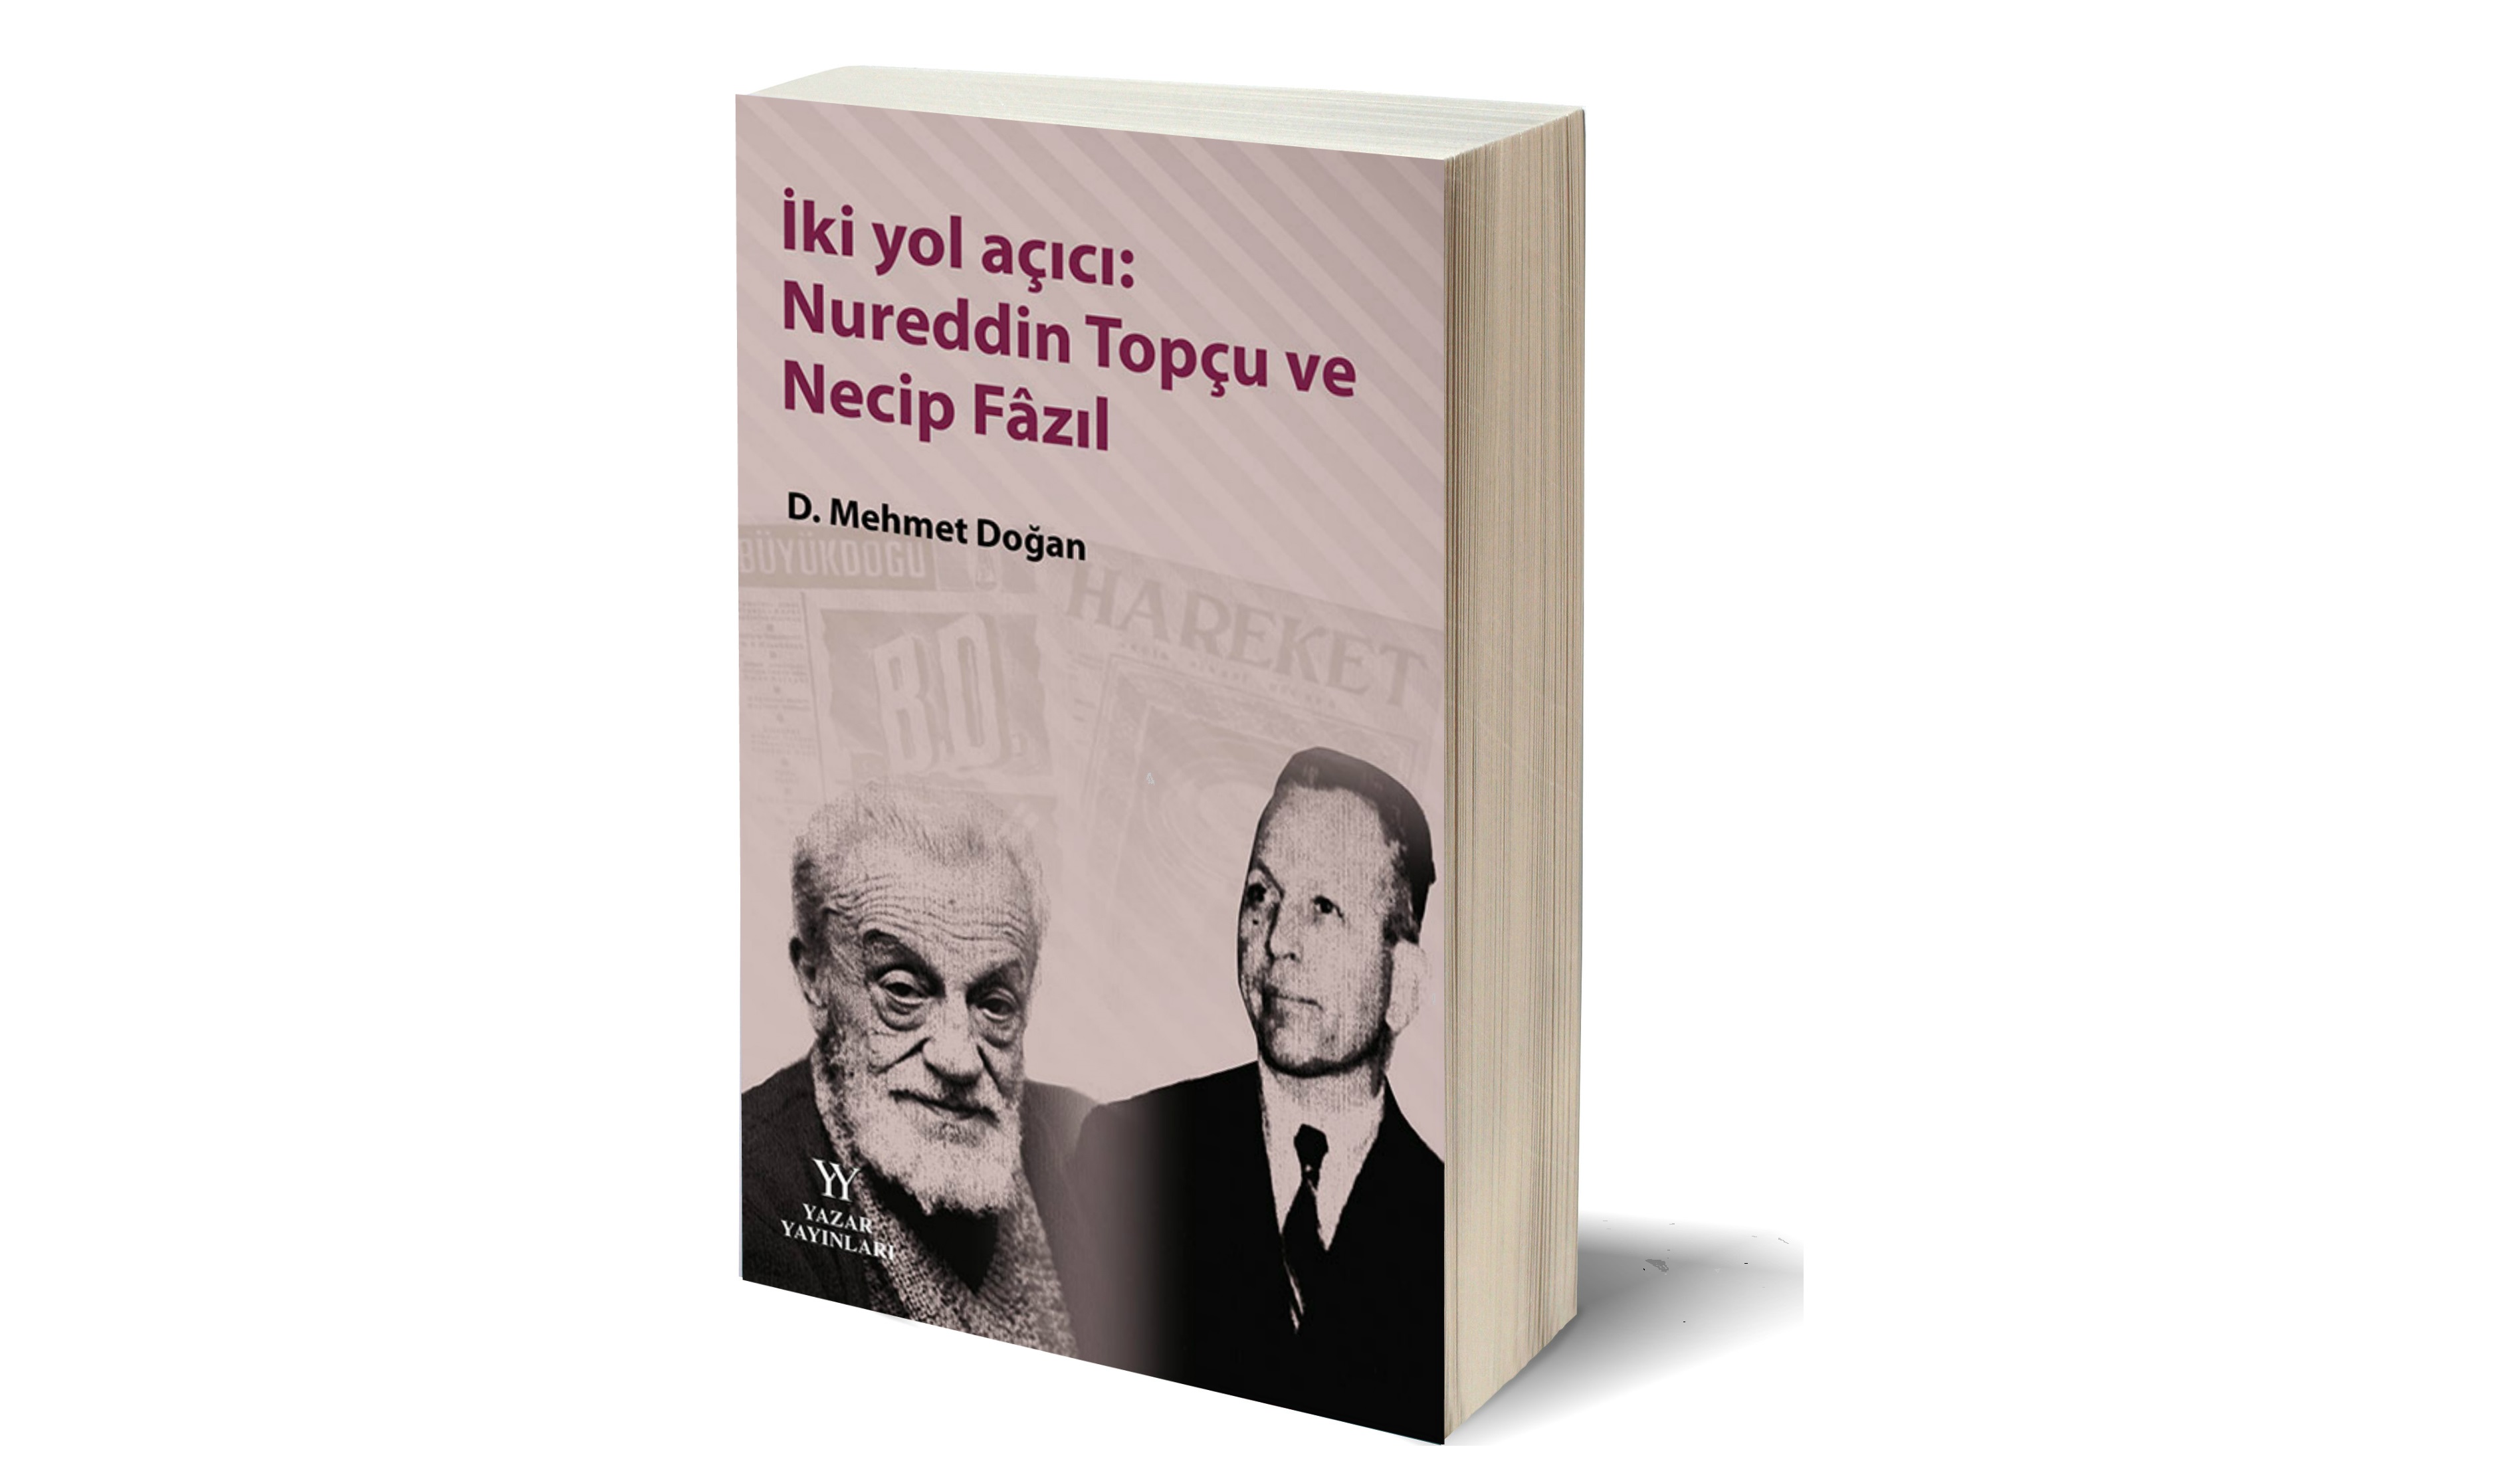 D. Mehmet Doğan’dan yeni kitap: İki yol açıcı: Nureddin Topçu ve Necip Fâzıl